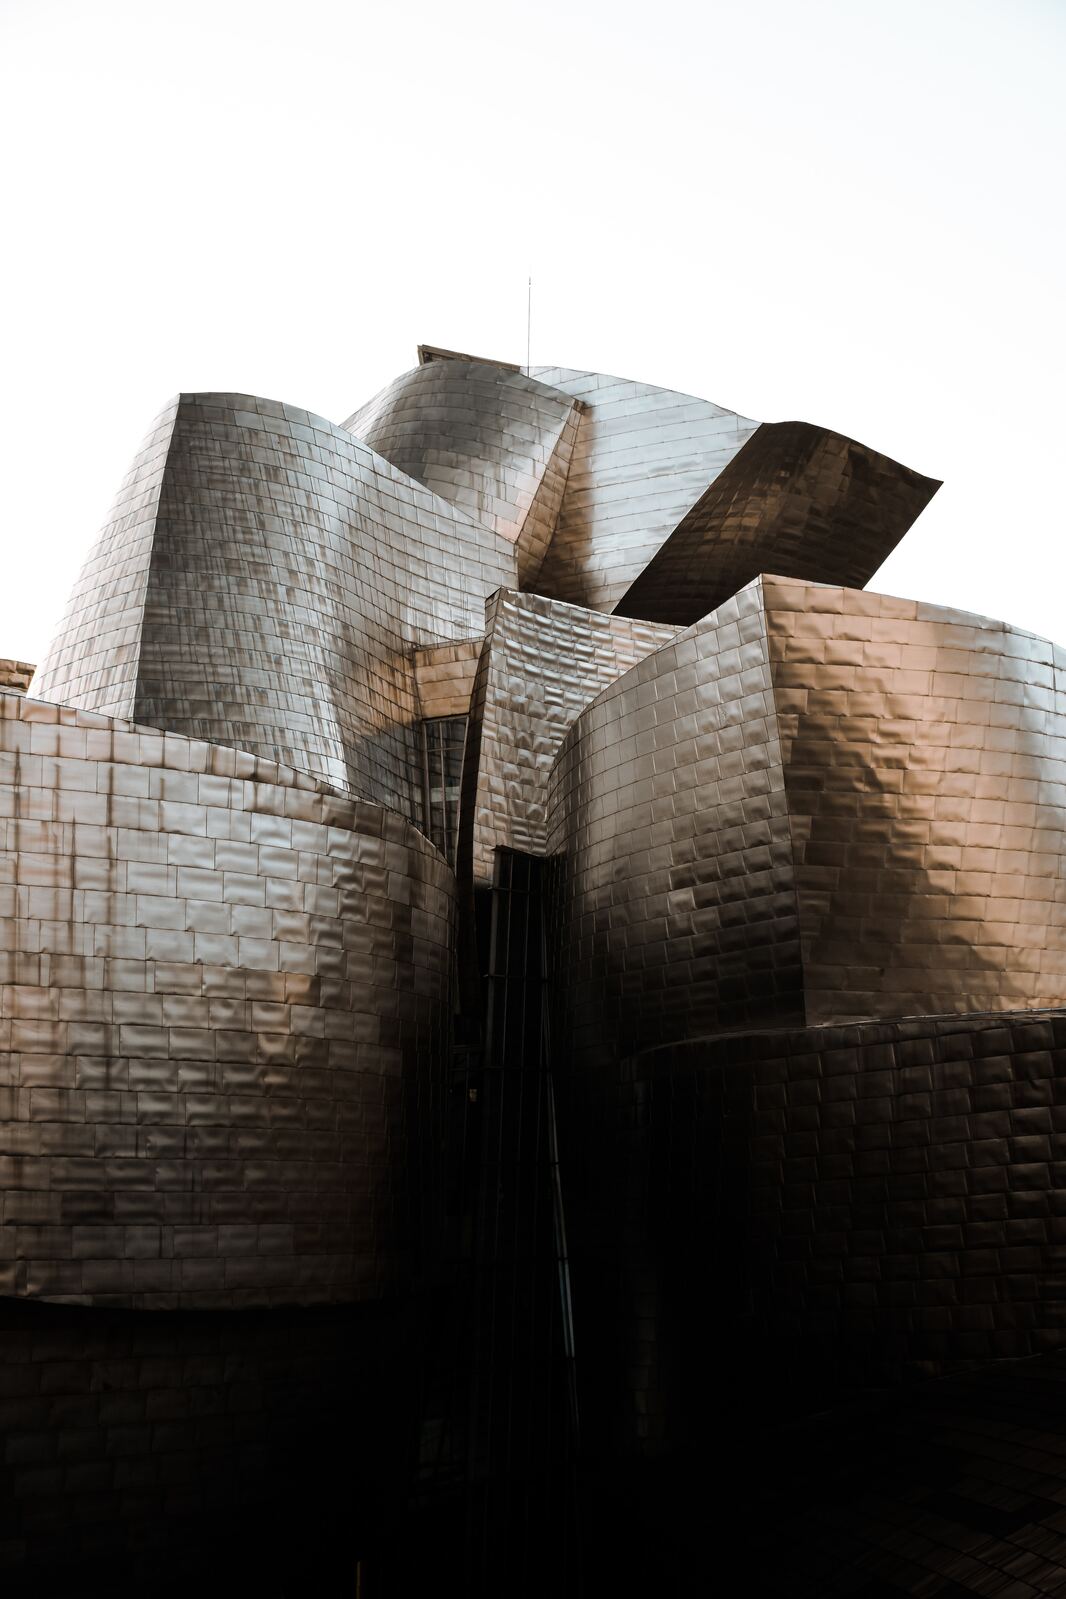 Image of Guggenheim Museum Bilbao by Team PhotoHound